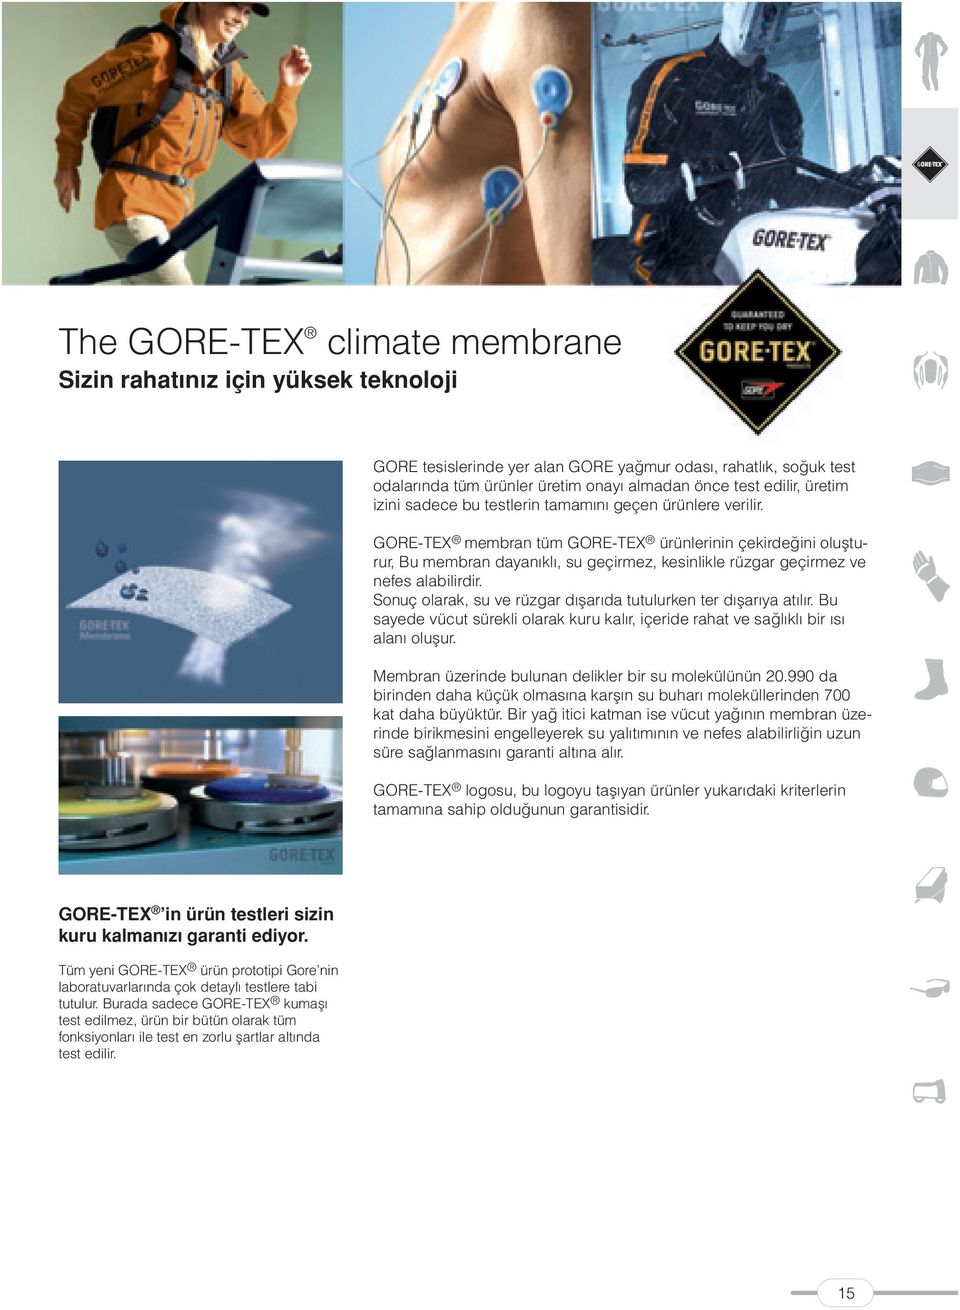 GORE-TEX membran tüm GORE-TEX ürünlerinin çekirdeğini oluşturur, Bu membran dayanıklı, su geçirmez, kesinlikle rüzgar geçirmez ve nefes alabilirdir.